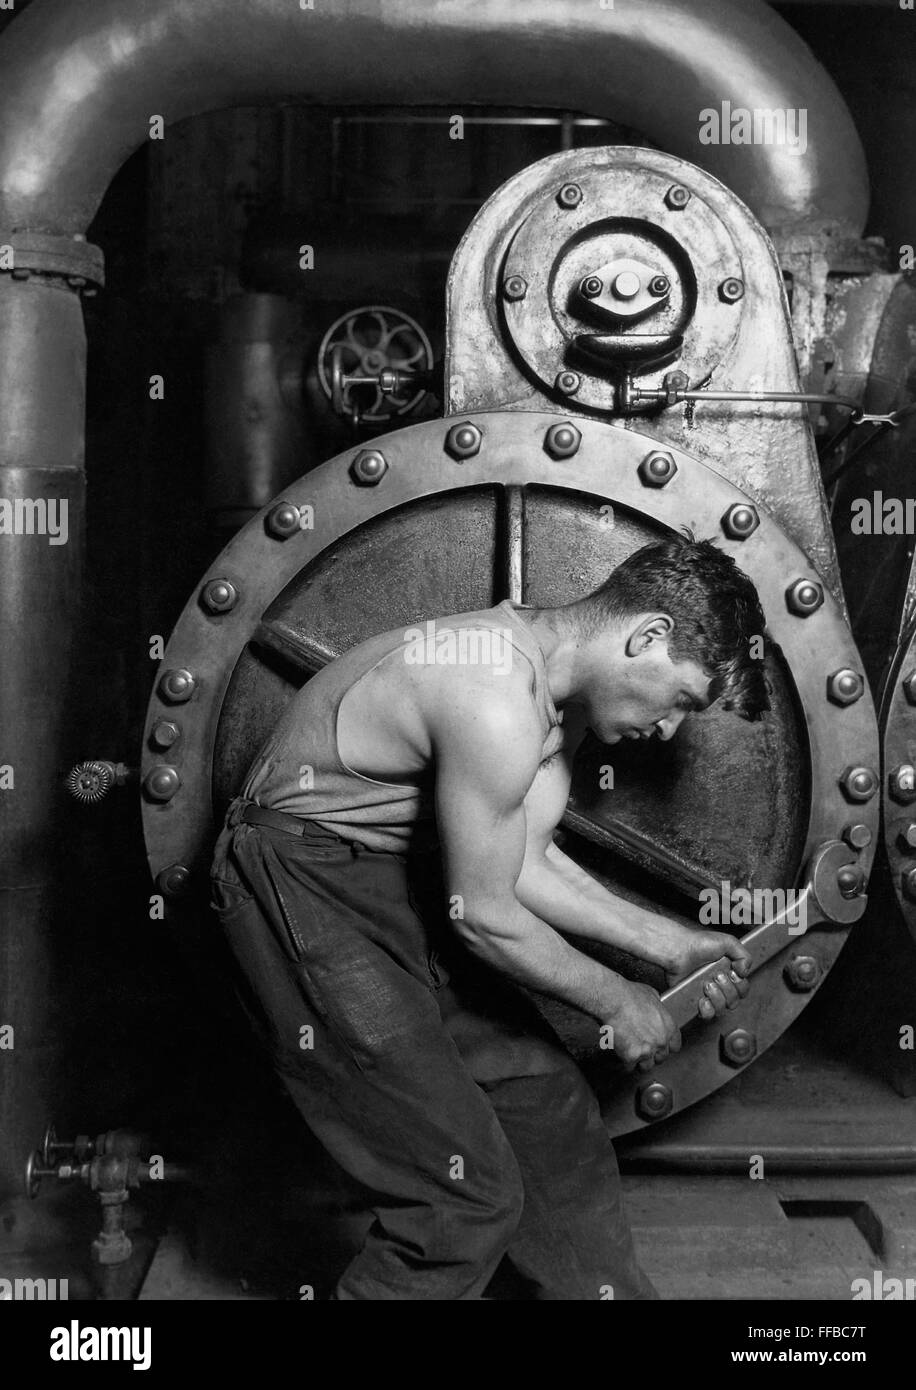 Lewis Hine's Power house 1920 mécanicien travaillant sur la pompe à vapeur, l'un de ses portraits "travail", montre une classe ouvrière-américain dans un cadre industriel. La question posée avec soin, un jeune homme avec une clé en main, est voûté au-dessus, entouré par la machine qui définit son travail. Mais tout en étant limitées par la machine (près d'un metal utérus), l'homme se tendre contre elle--muscles tendus, avec un regard déterminé--dans une représentation iconique de la masculinité. Photographie par Lewis W. Hine. Banque D'Images